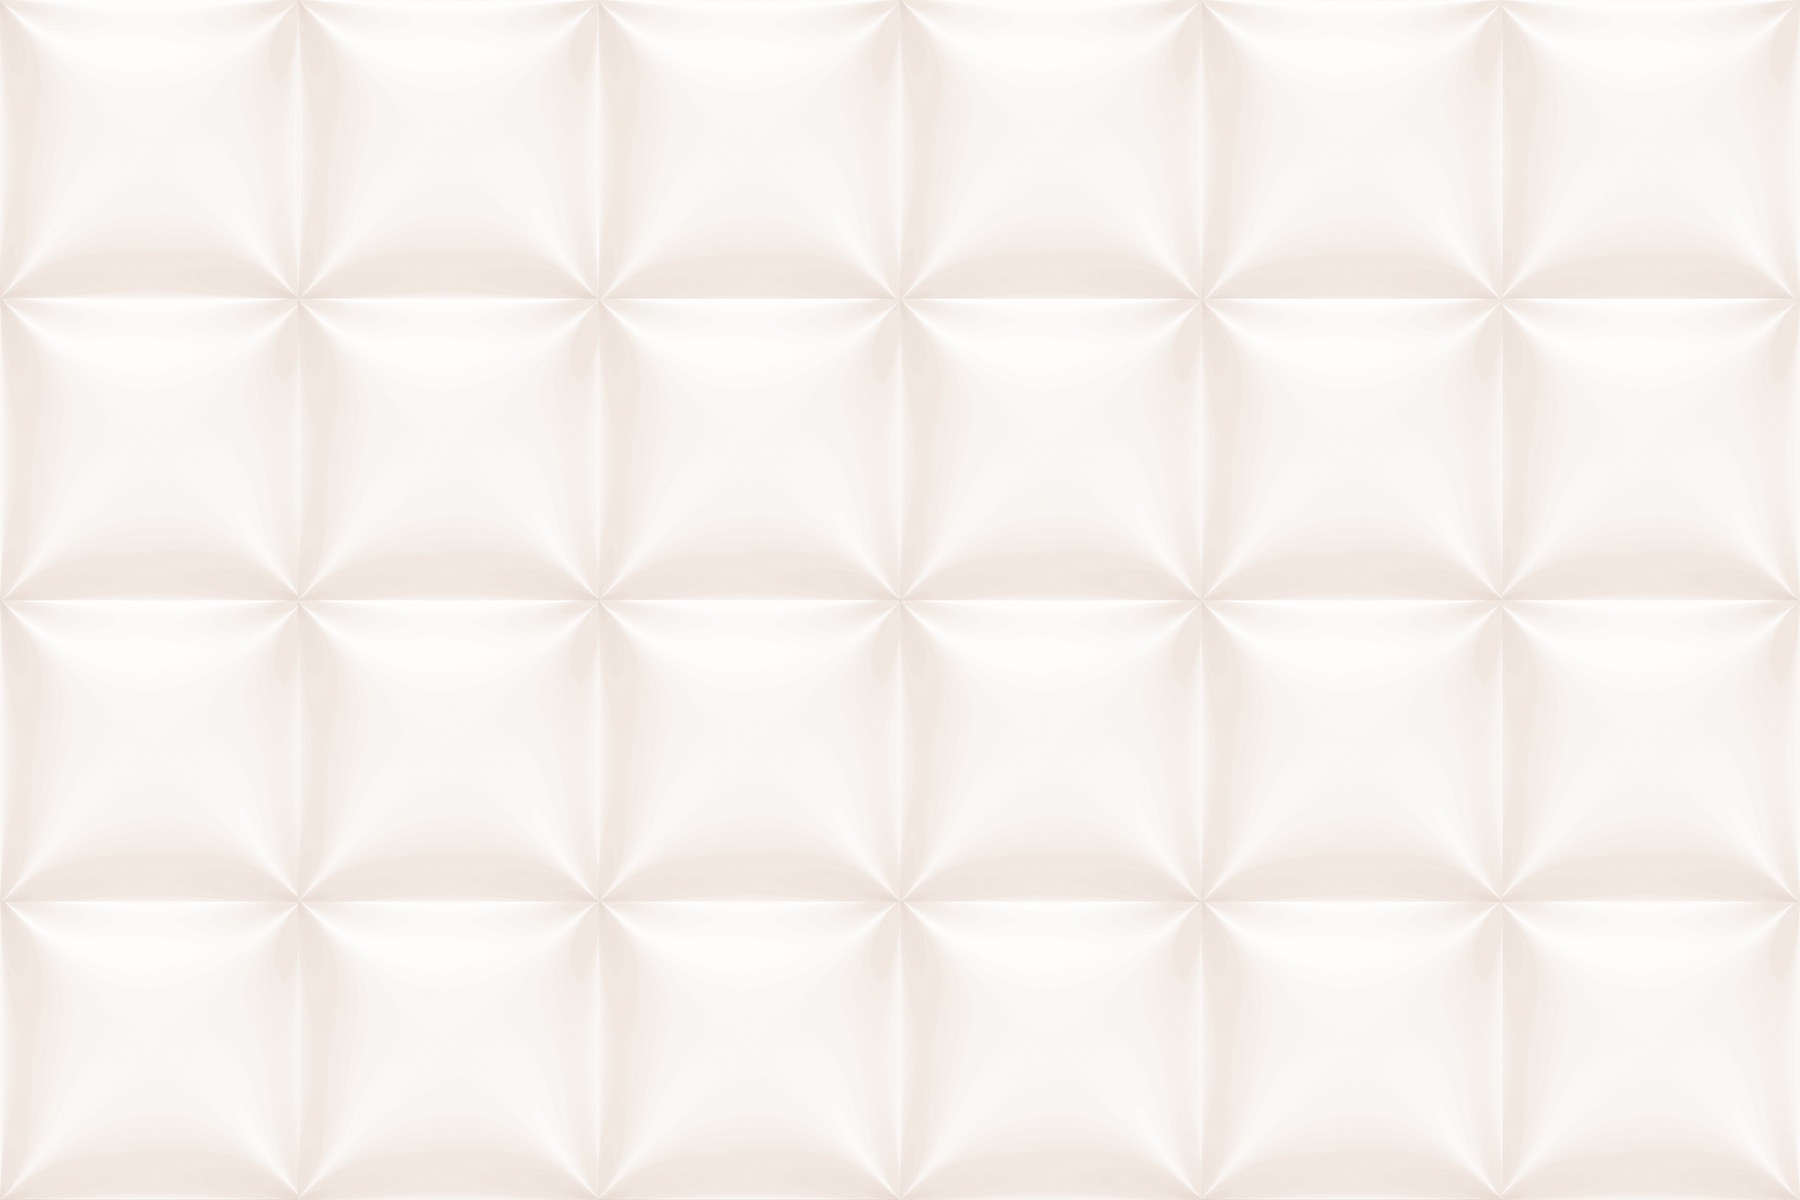 Vitrified Tiles for Bathroom Tiles, Kitchen Tiles, Balcony Tiles